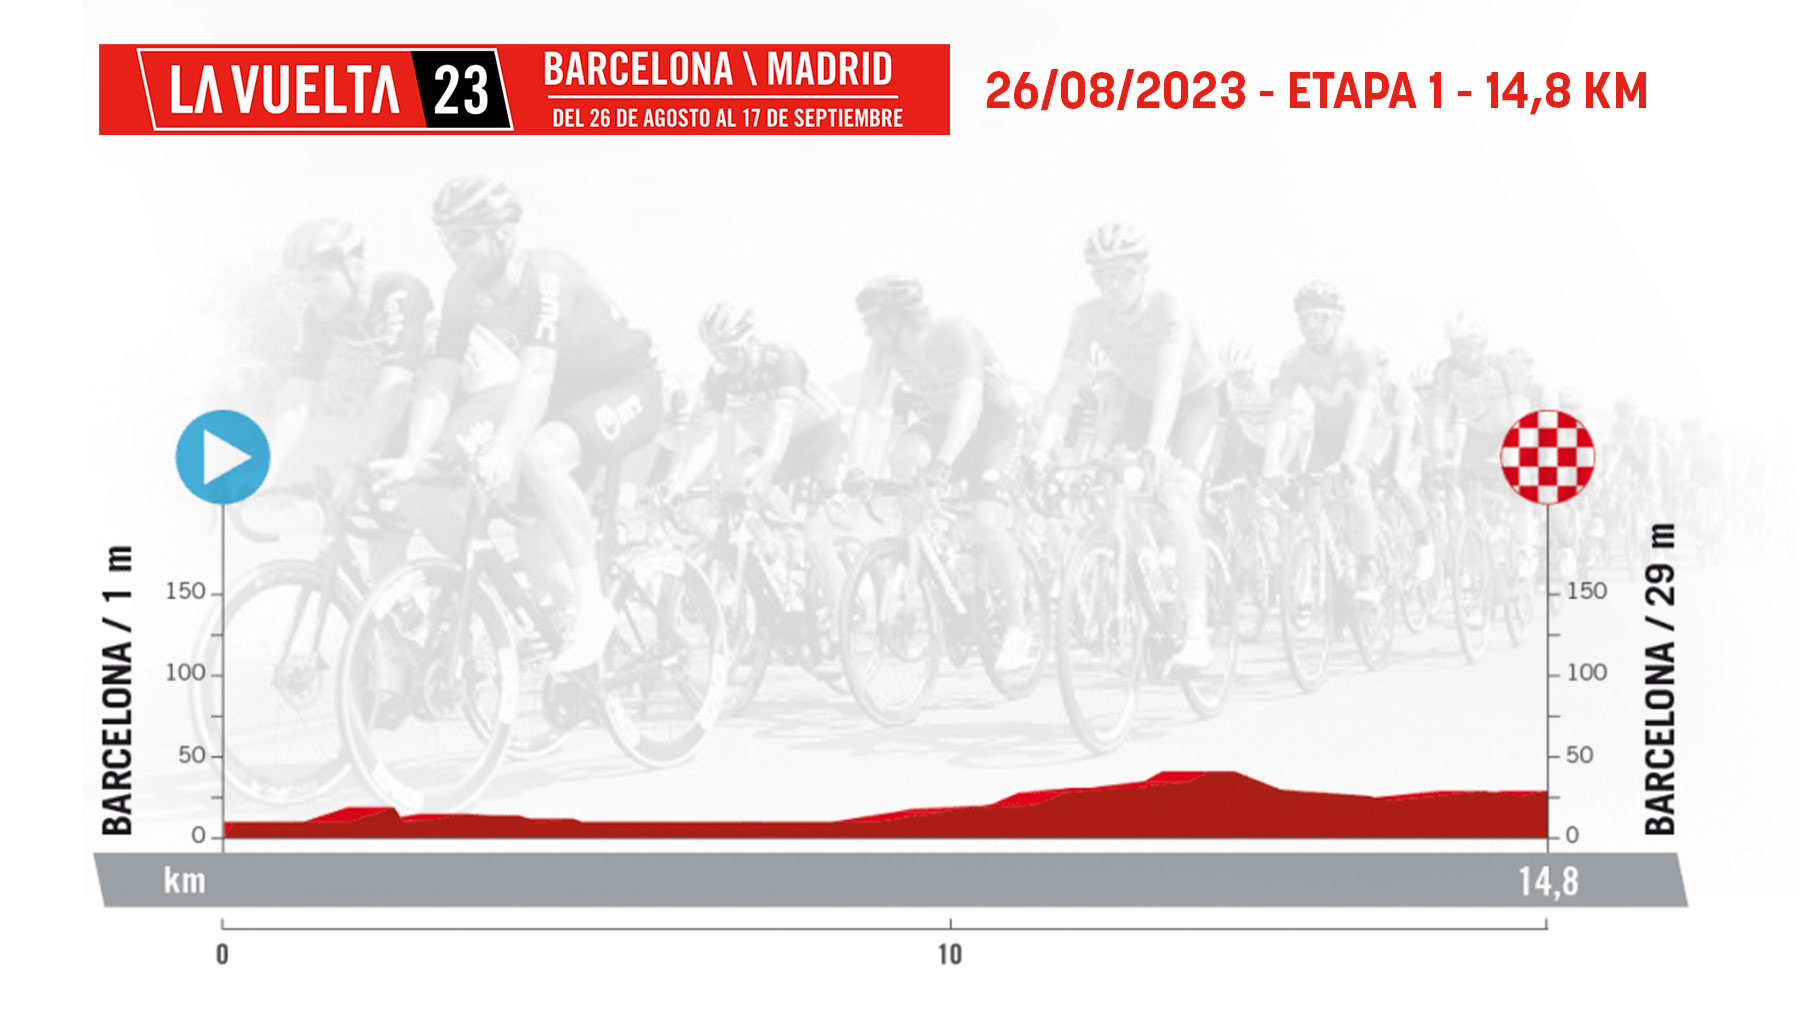 Etapa 1 de la Vuelta Ciclista a España 2023 hoy, sábado 26 de agosto en Barcelona.